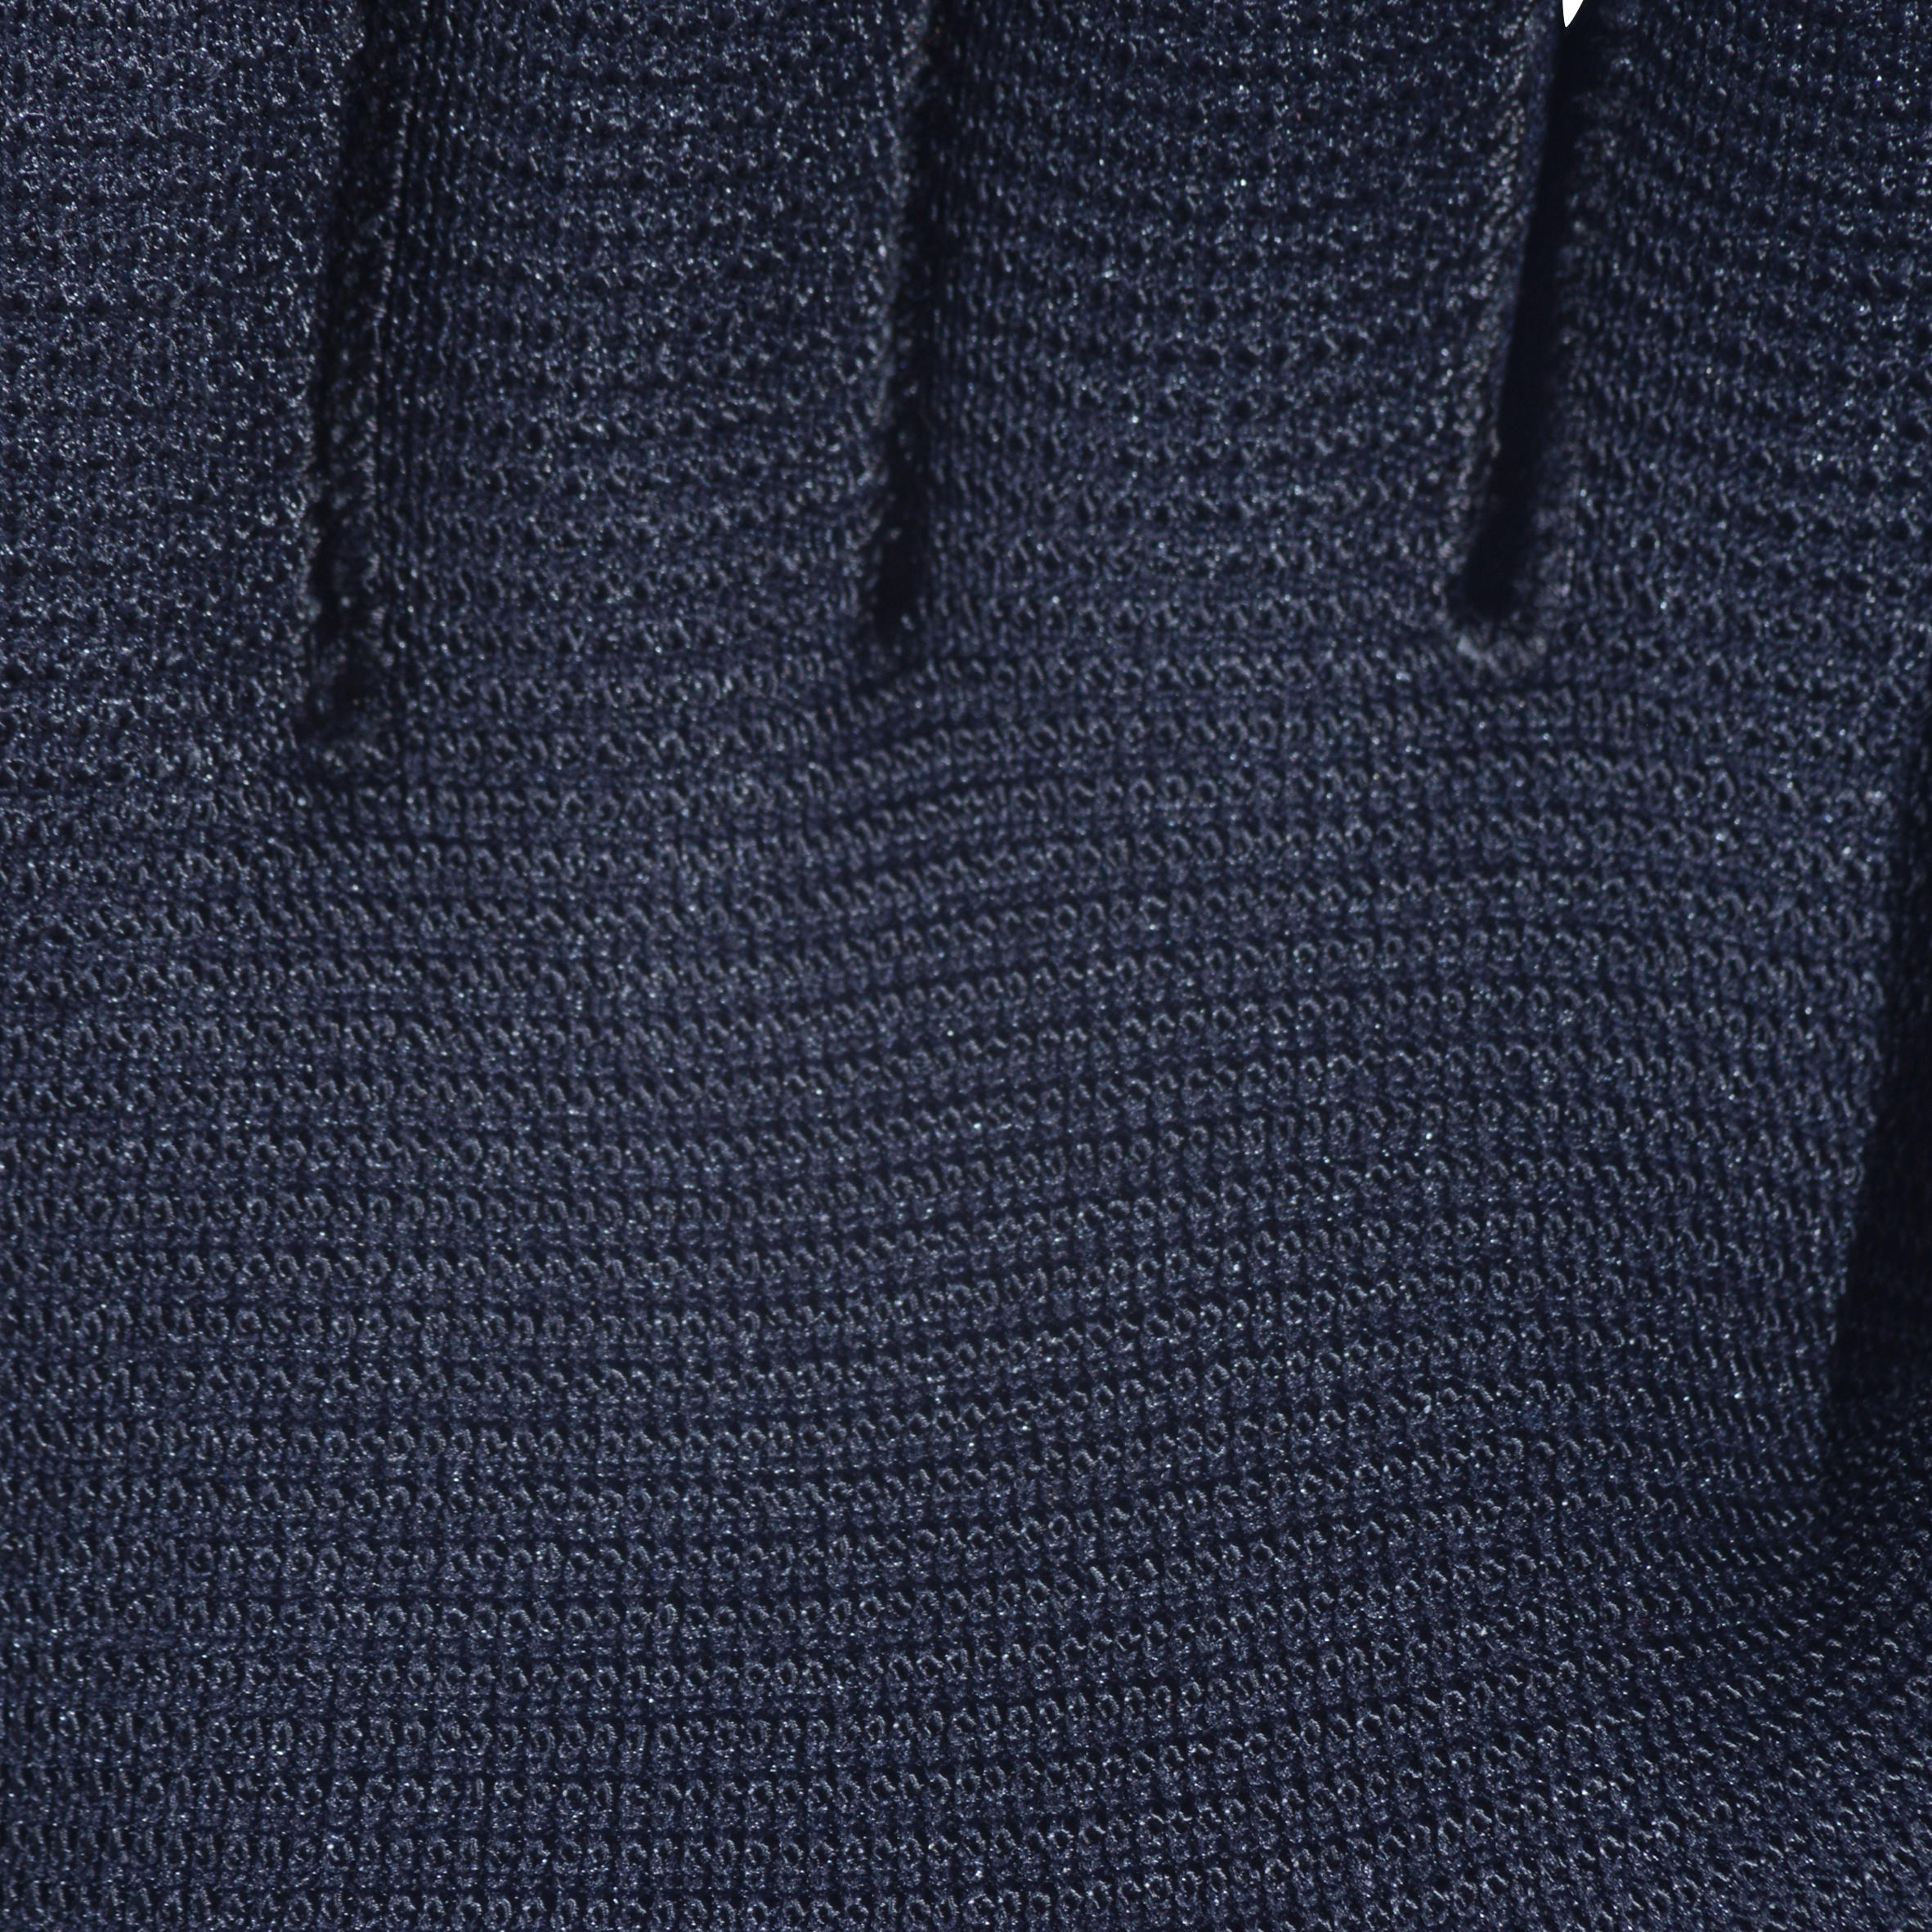 Diving gloves 3 mm neoprene black 6/9